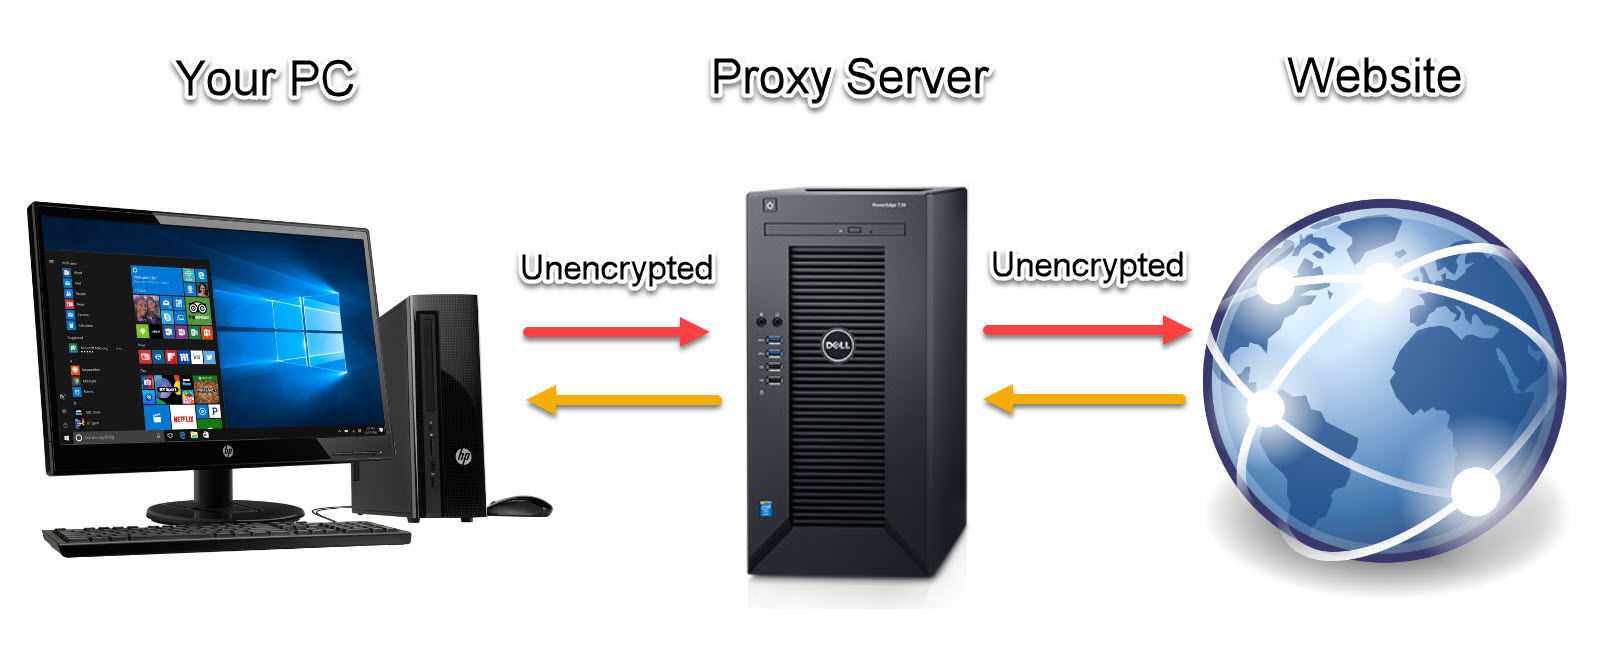 Proxy traffic. Прокси сервер. Проесисервер. Proksil Server. Proxy-Server (прокси-сервер).